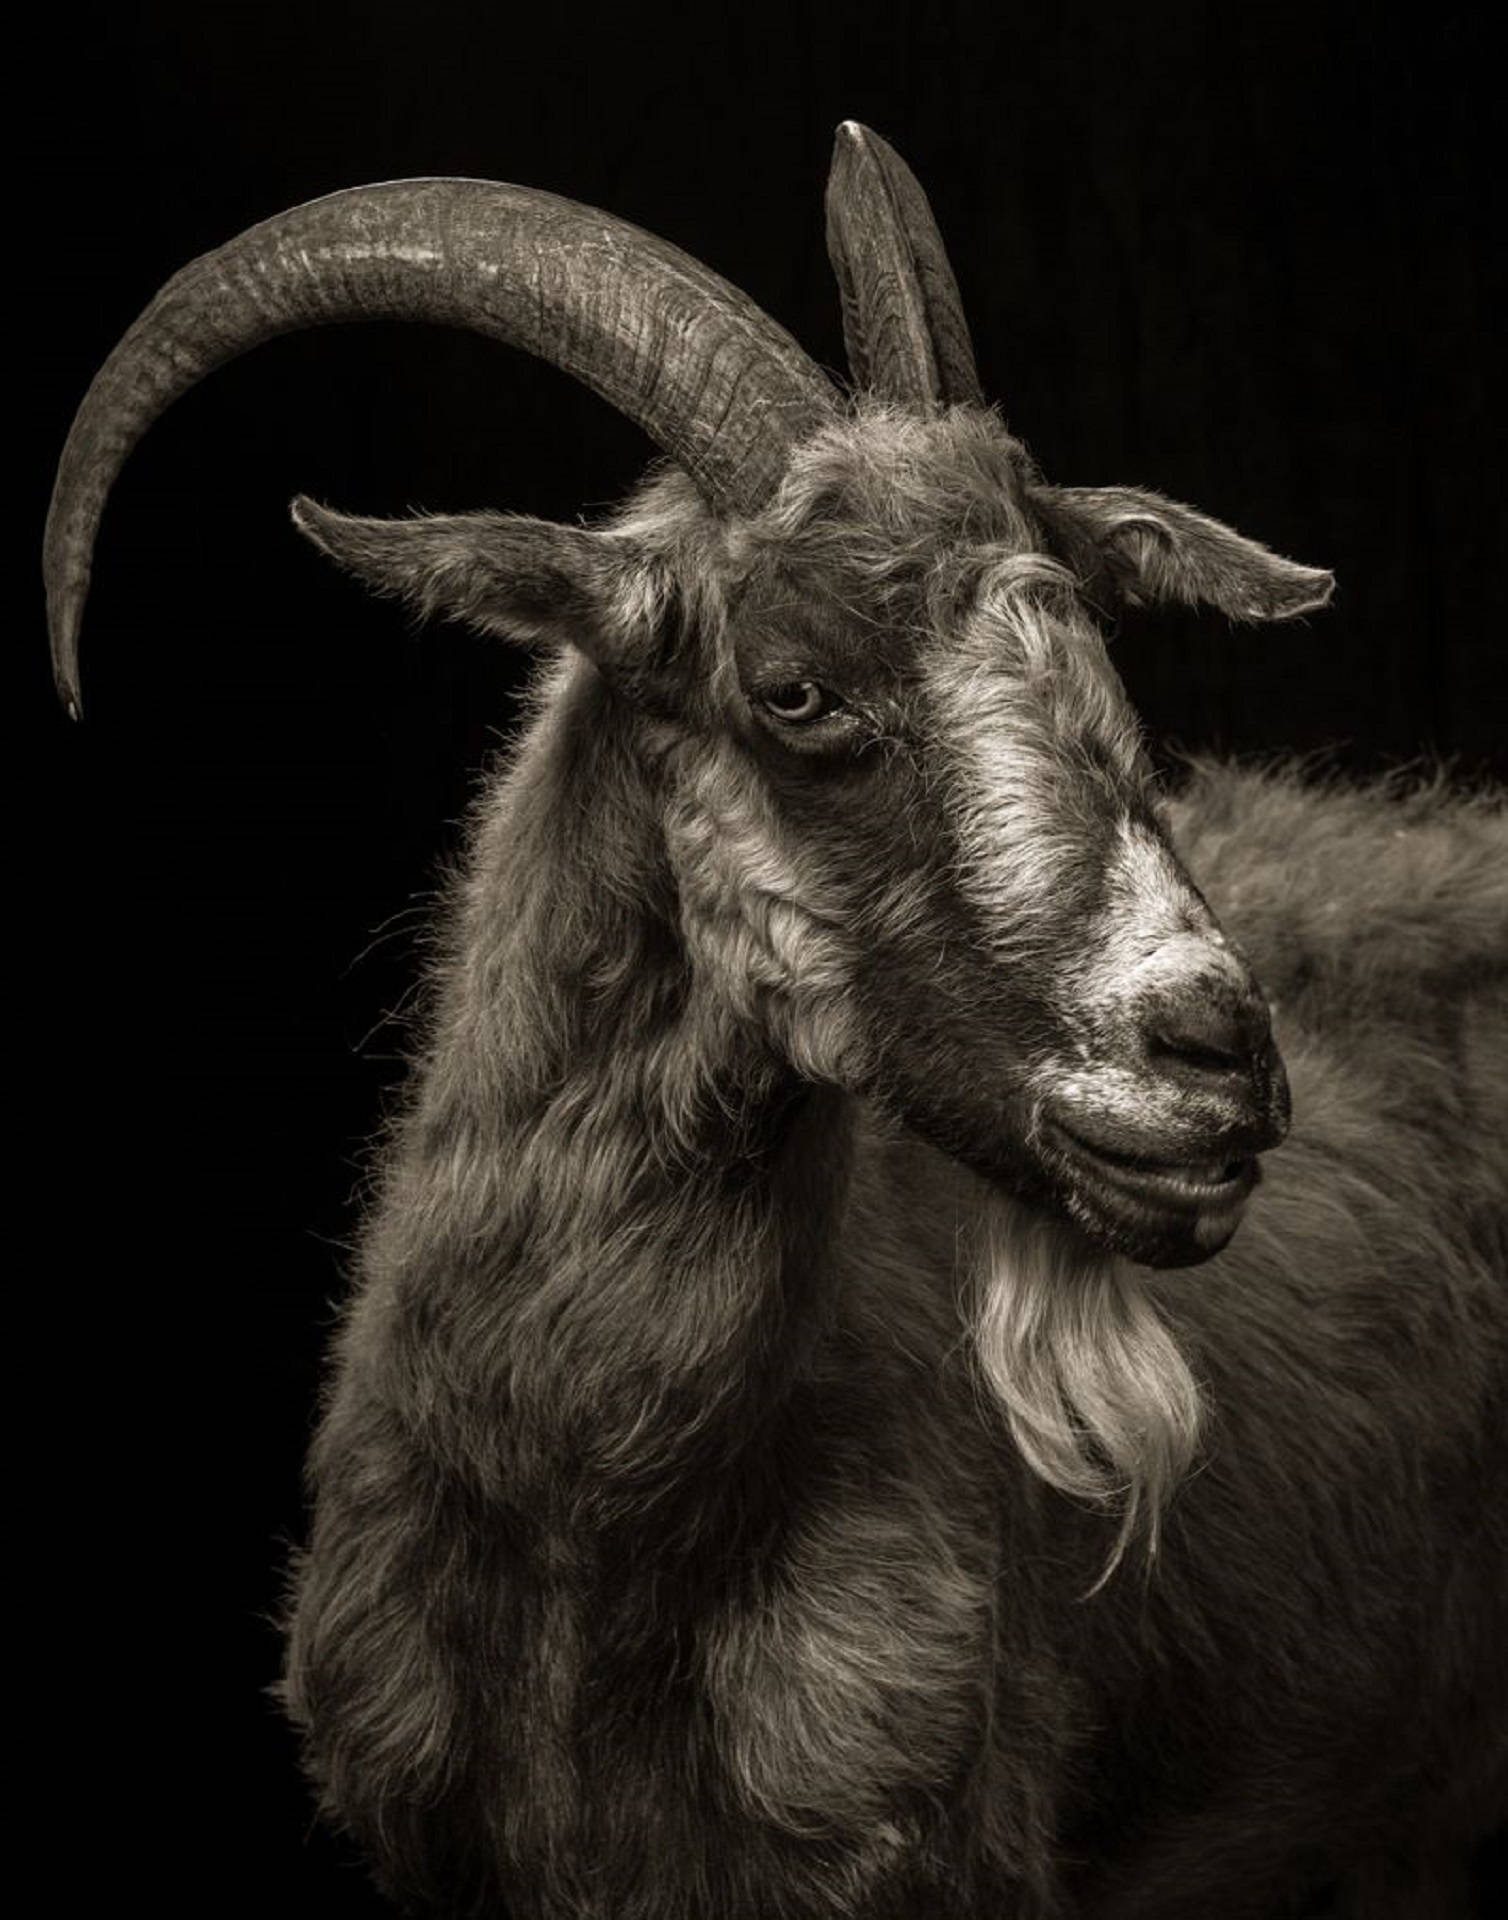 A Mature Goat Donning A Long Beard